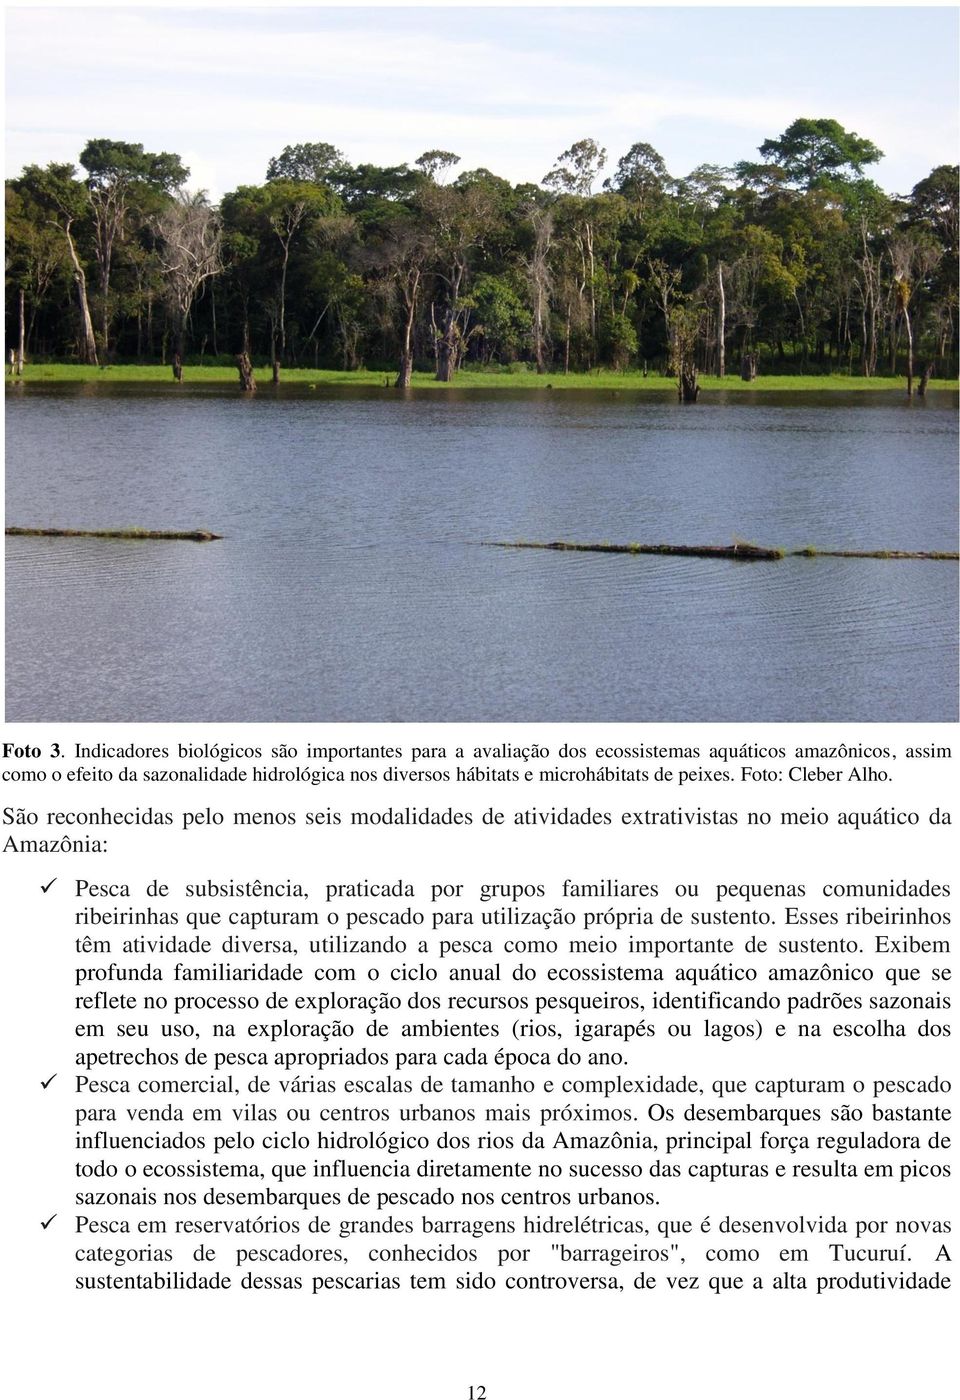 São reconhecidas pelo menos seis modalidades de atividades extrativistas no meio aquático da Amazônia: Pesca de subsistência, praticada por grupos familiares ou pequenas comunidades ribeirinhas que